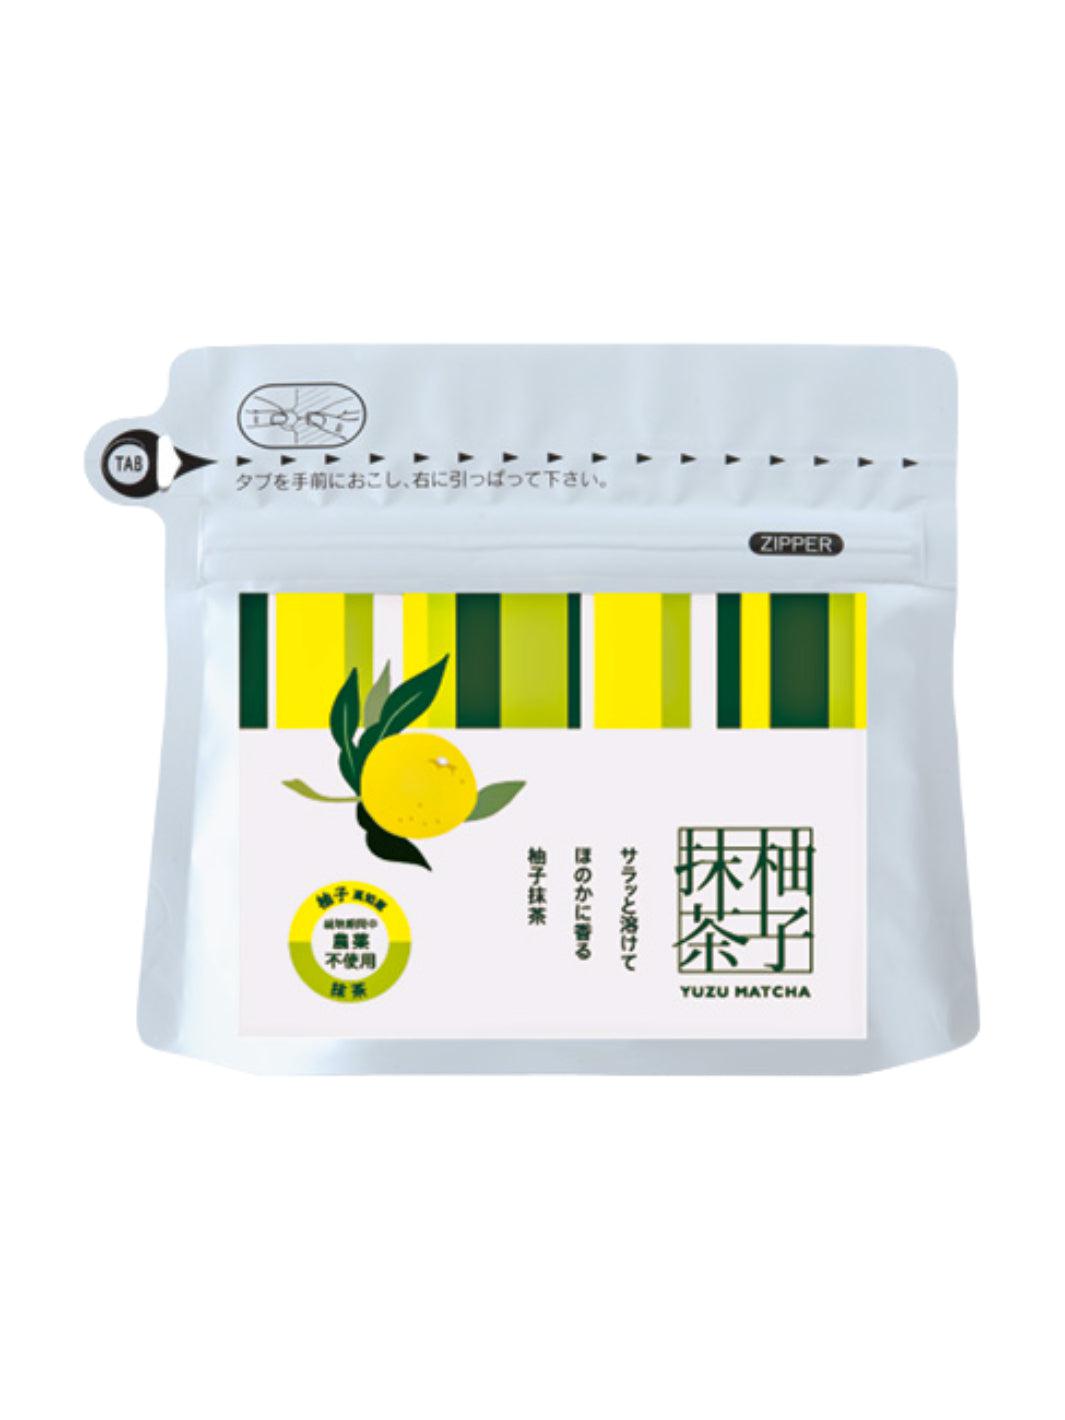 [Anti-Waste] Yuzu Matcha / Tea powder 40g